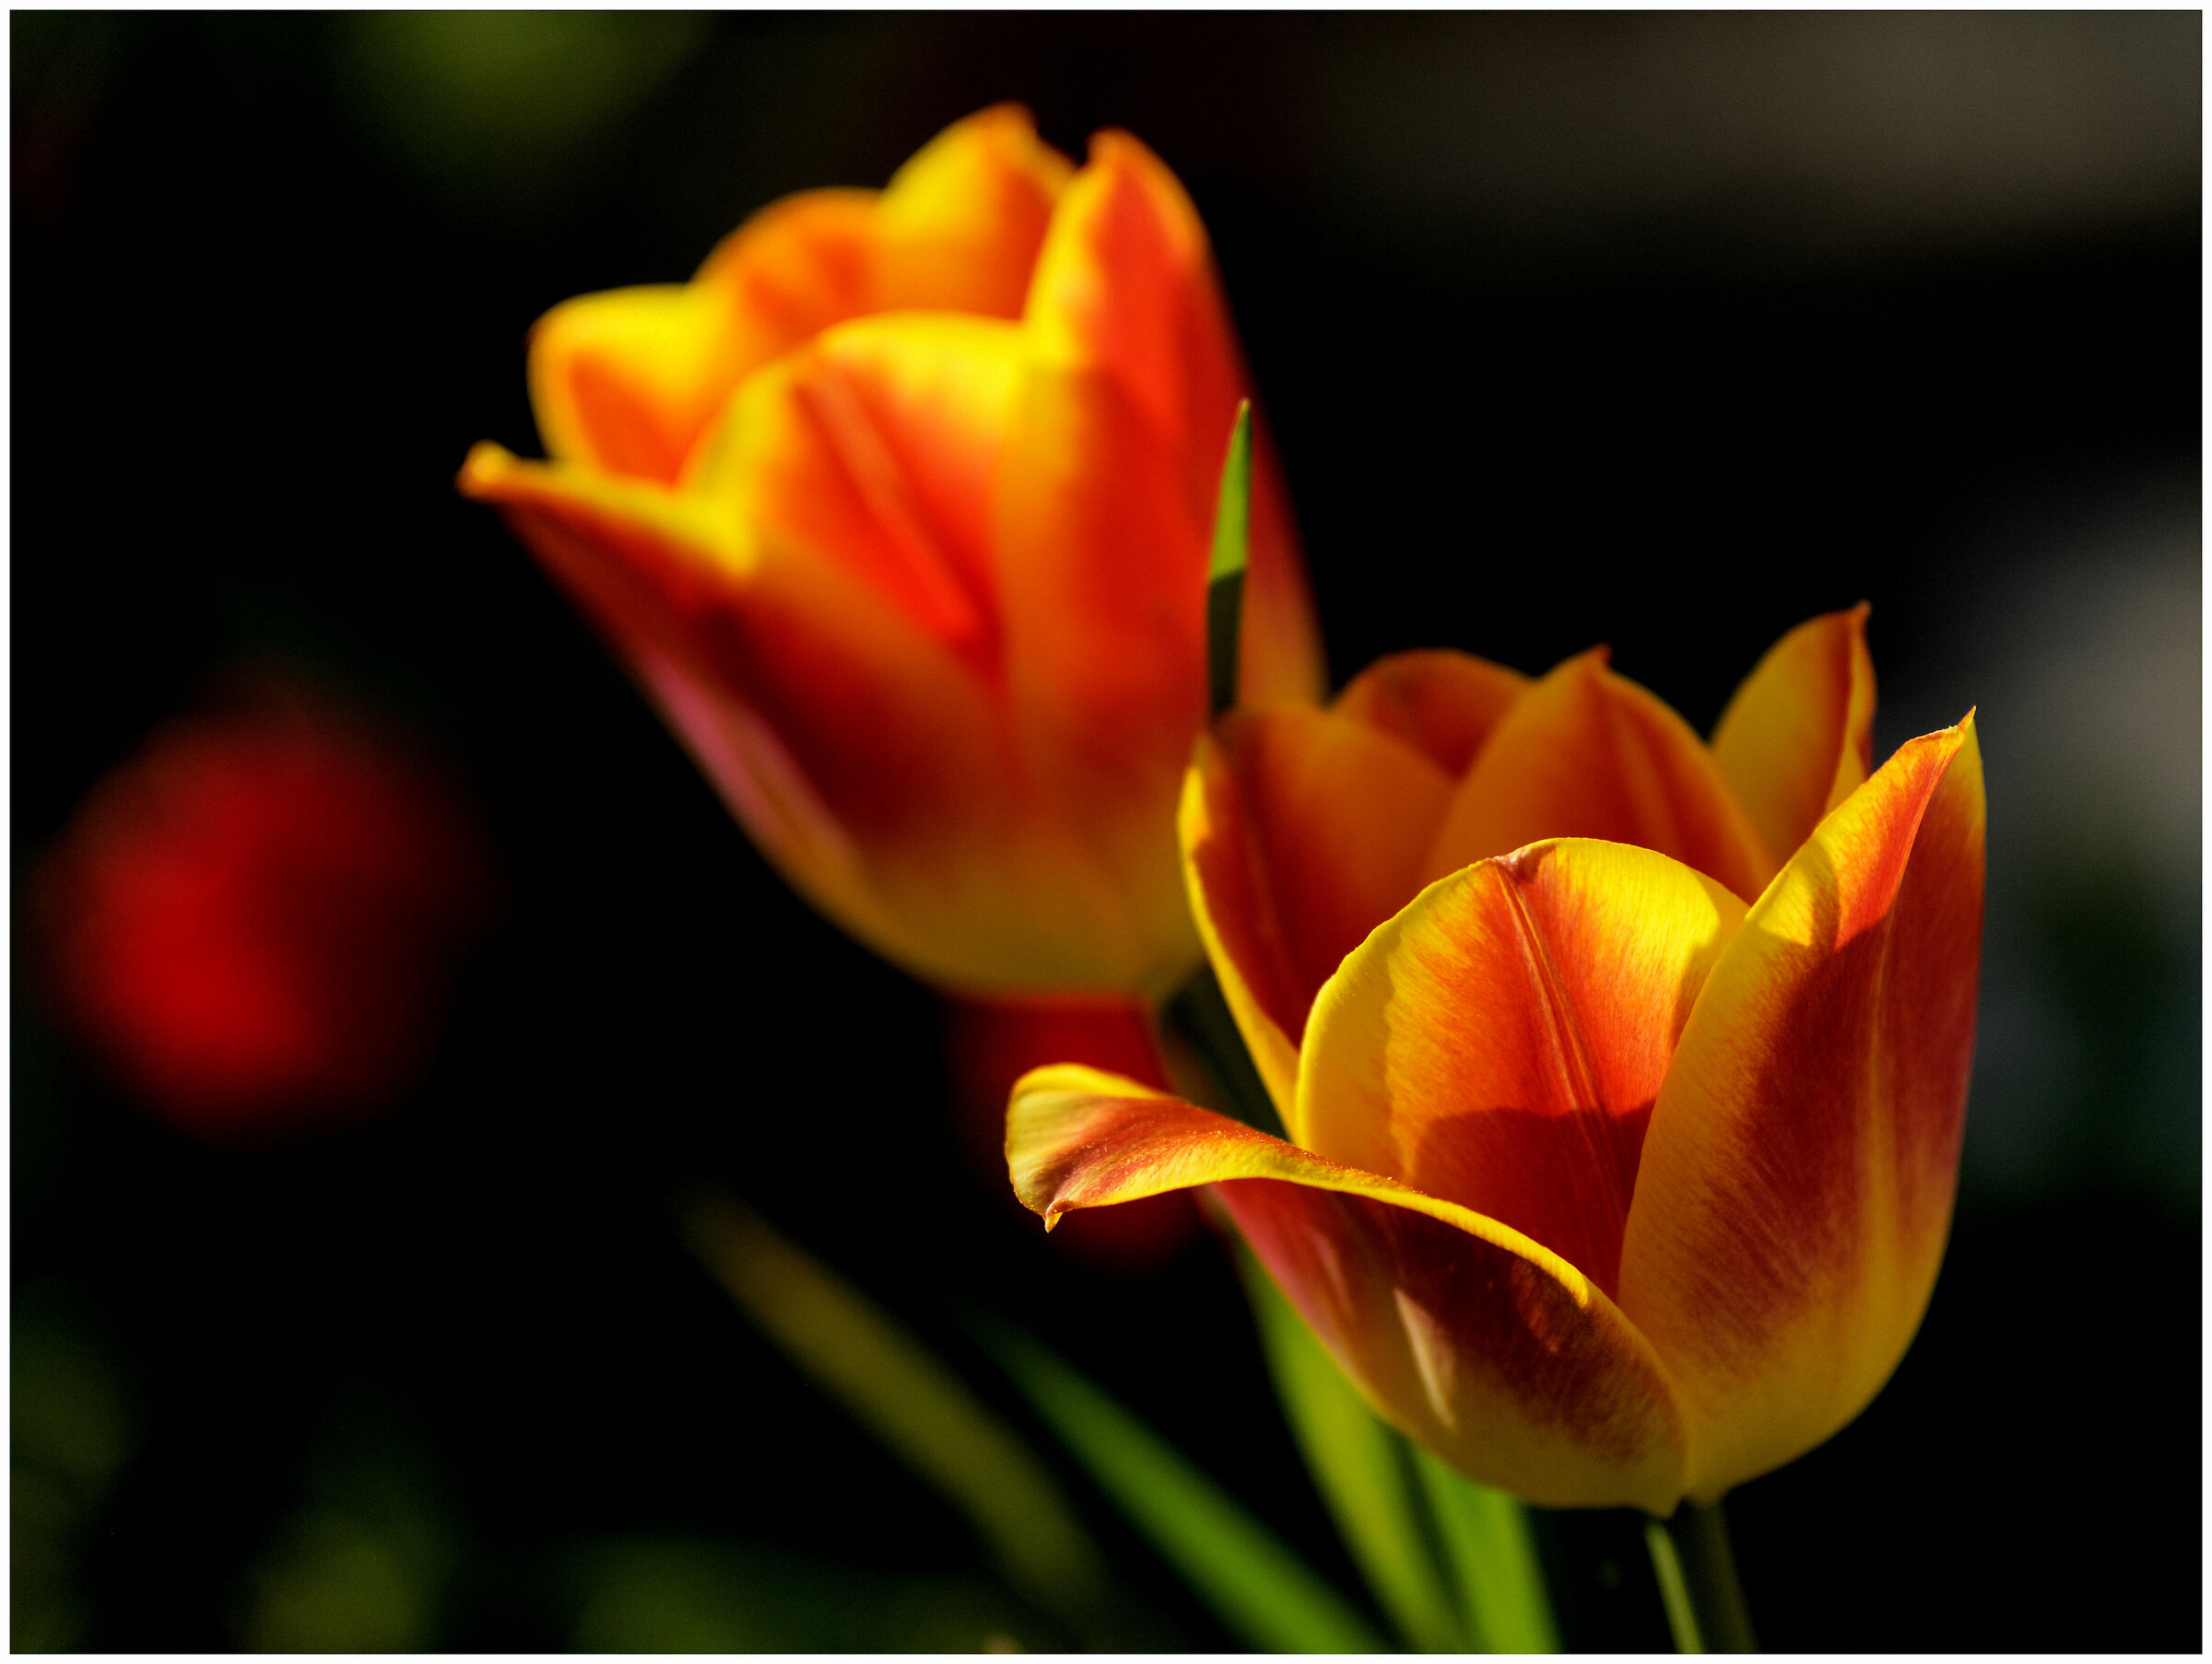 tulips in the garden...